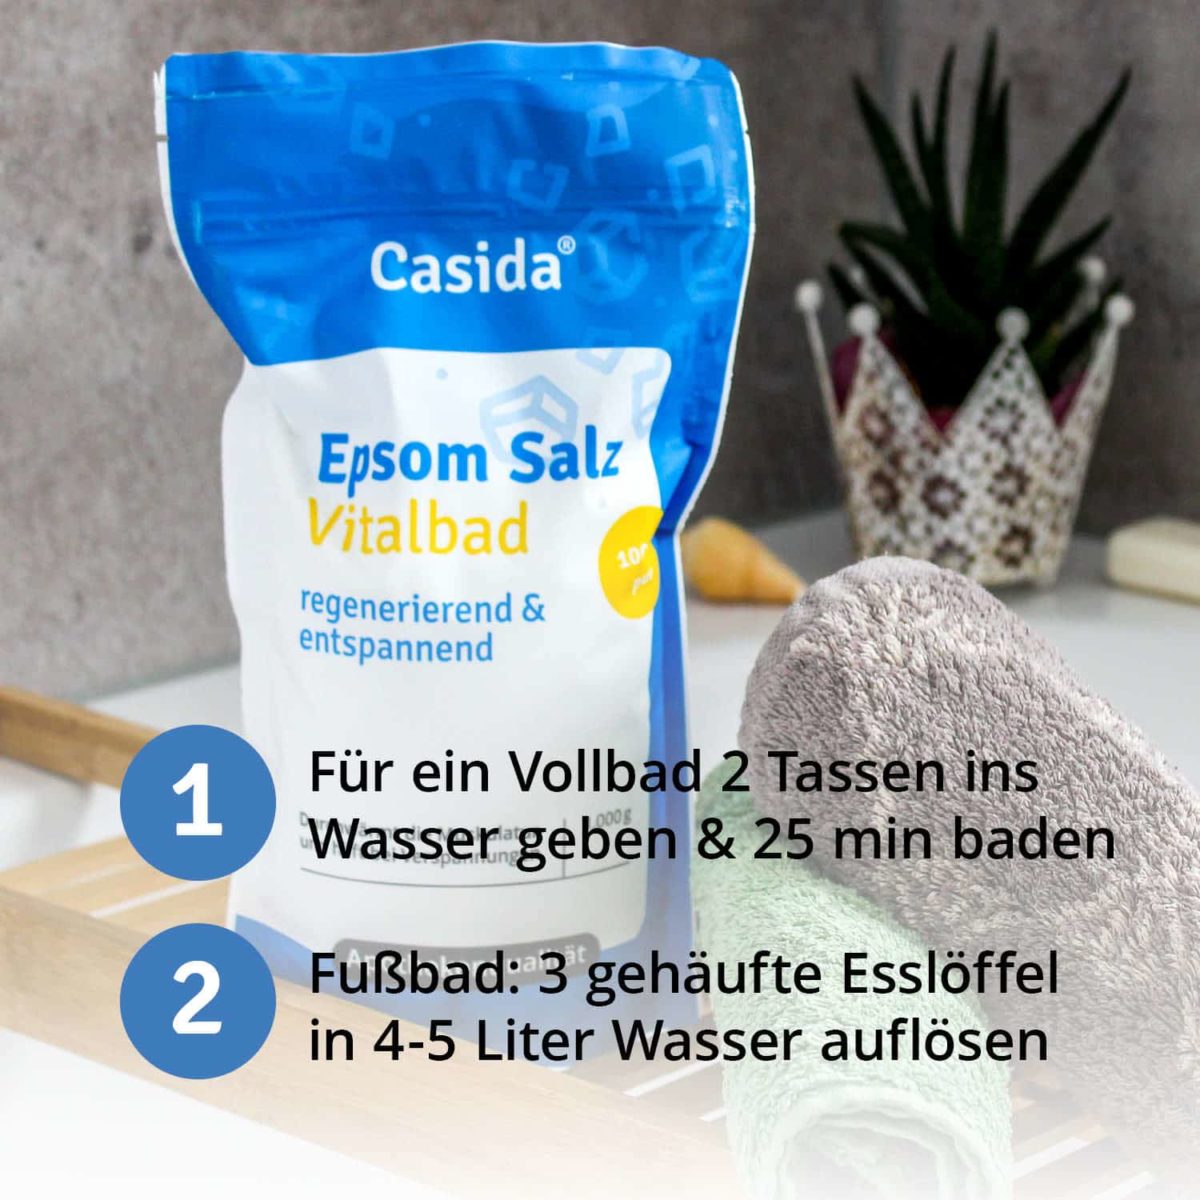 Casida Epsom Salz Vitalbad 1 kg 11103341 PZN Apotheke Bittersalz (1)6